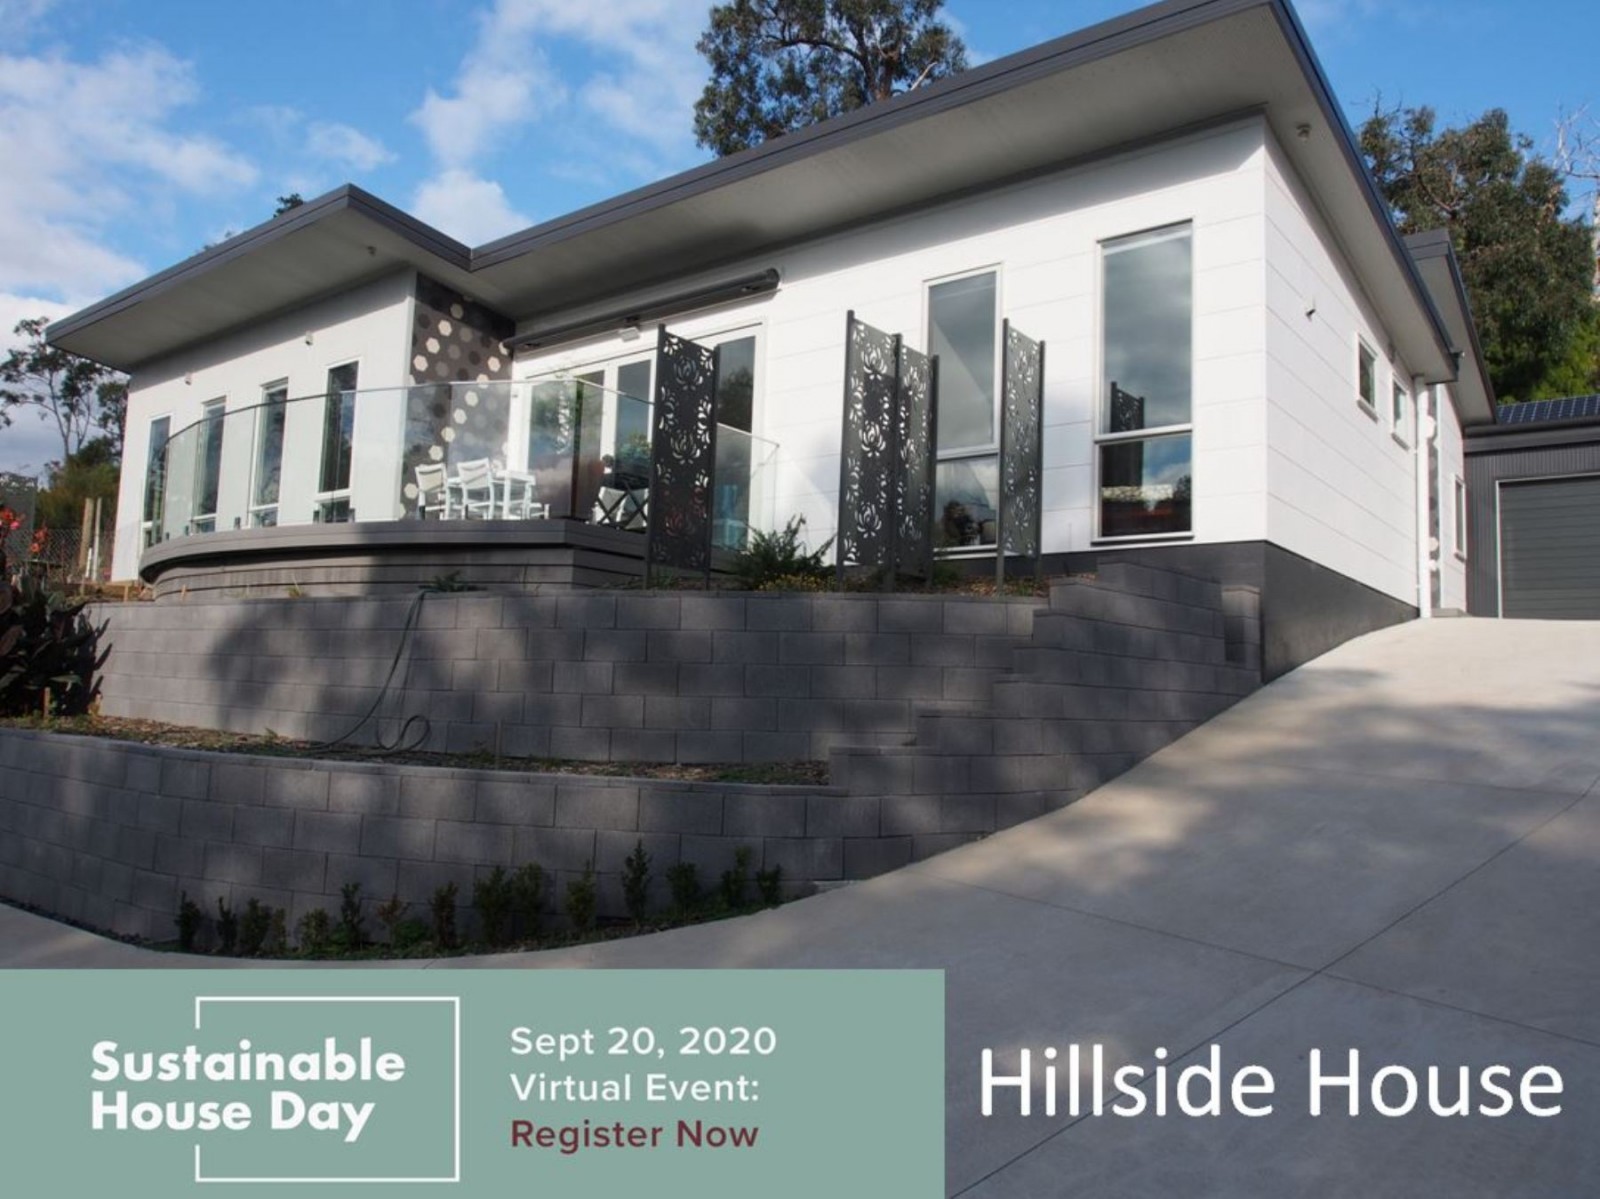 Hillside House Part 2 - Let's Count Carbon Footprints!